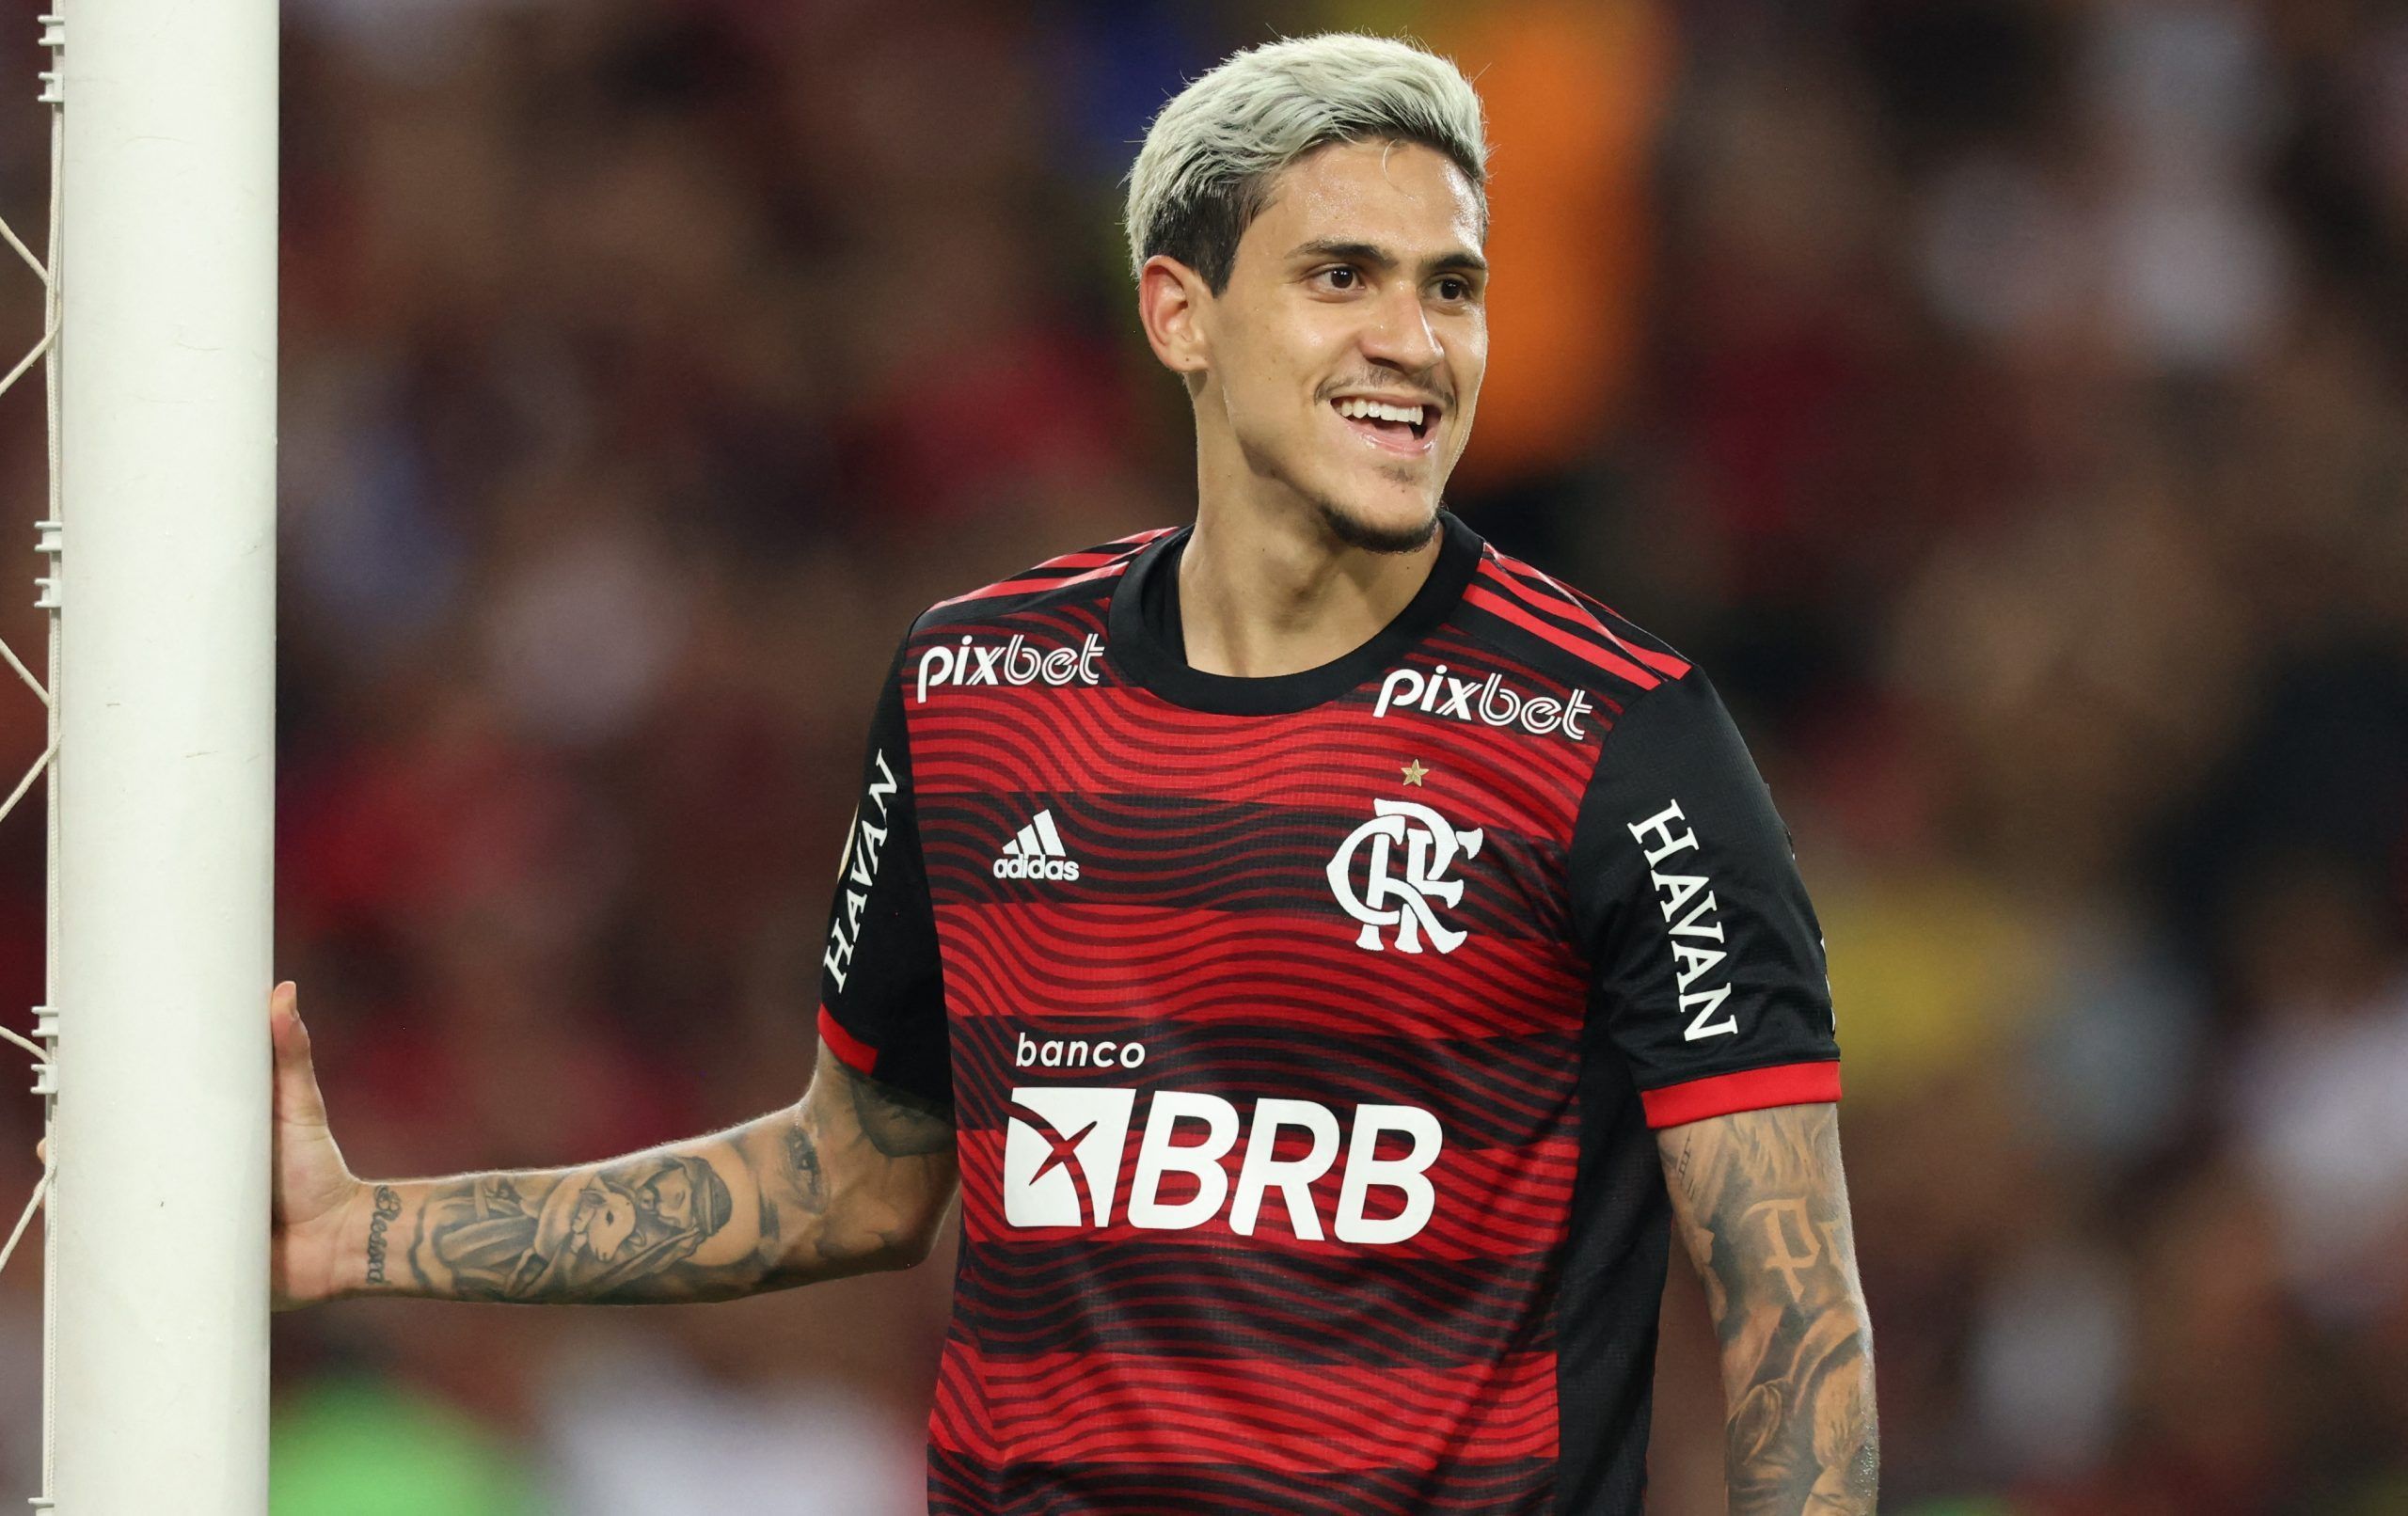 Pedro-Flamengo-Leeds-United-Transfer-Rodrigo